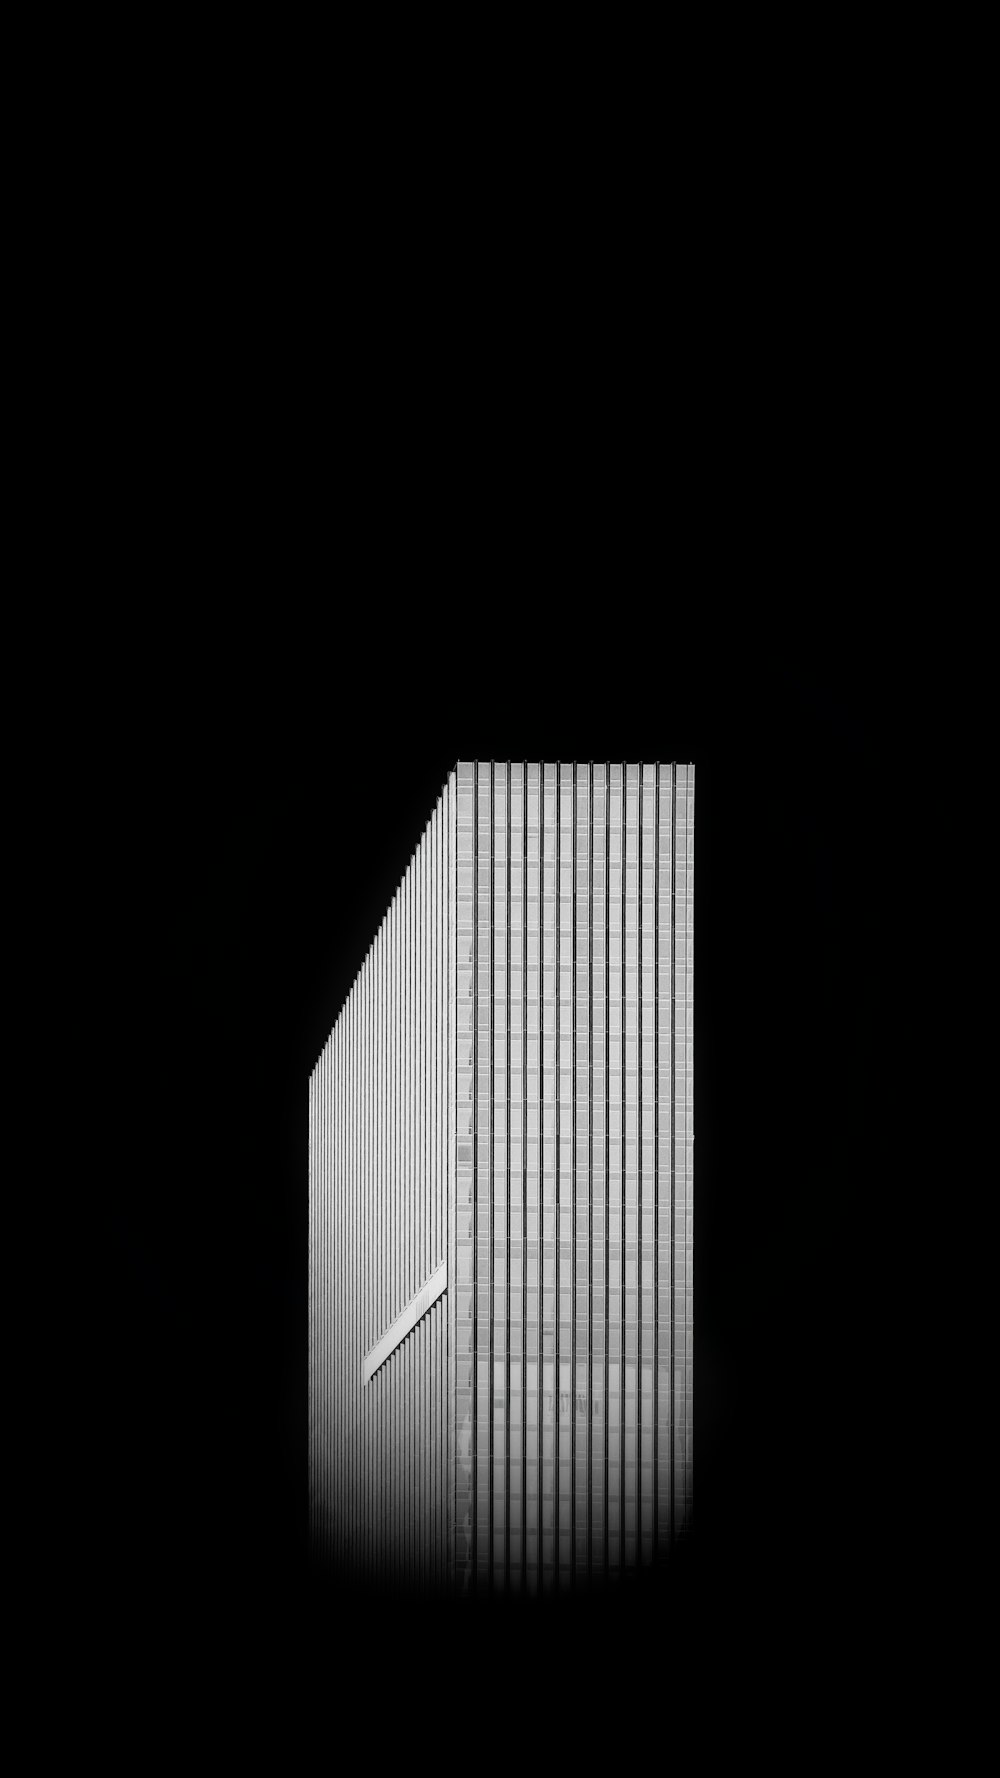 Edificio de gran altura en blanco y negro